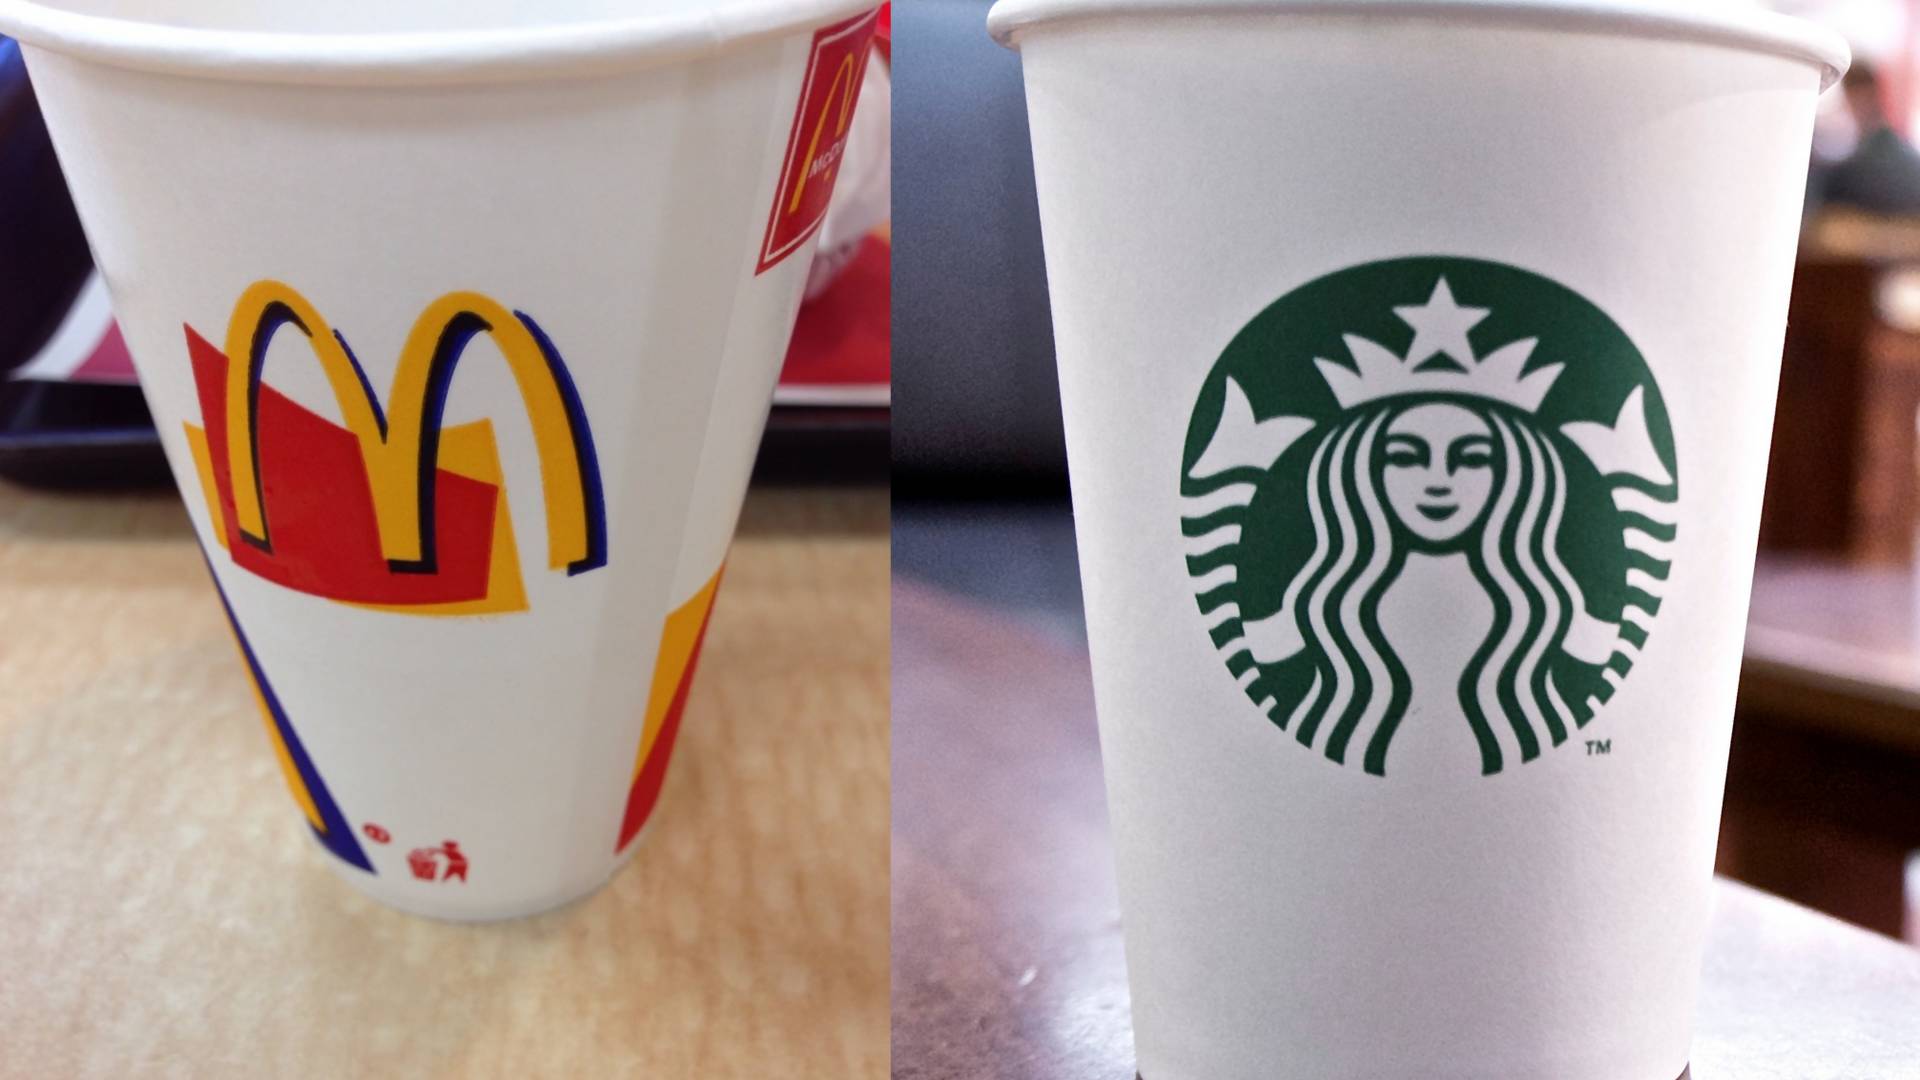 Starbucks i McDonald's łączą siły. Chcą stworzyć idealny kubek przyszłości